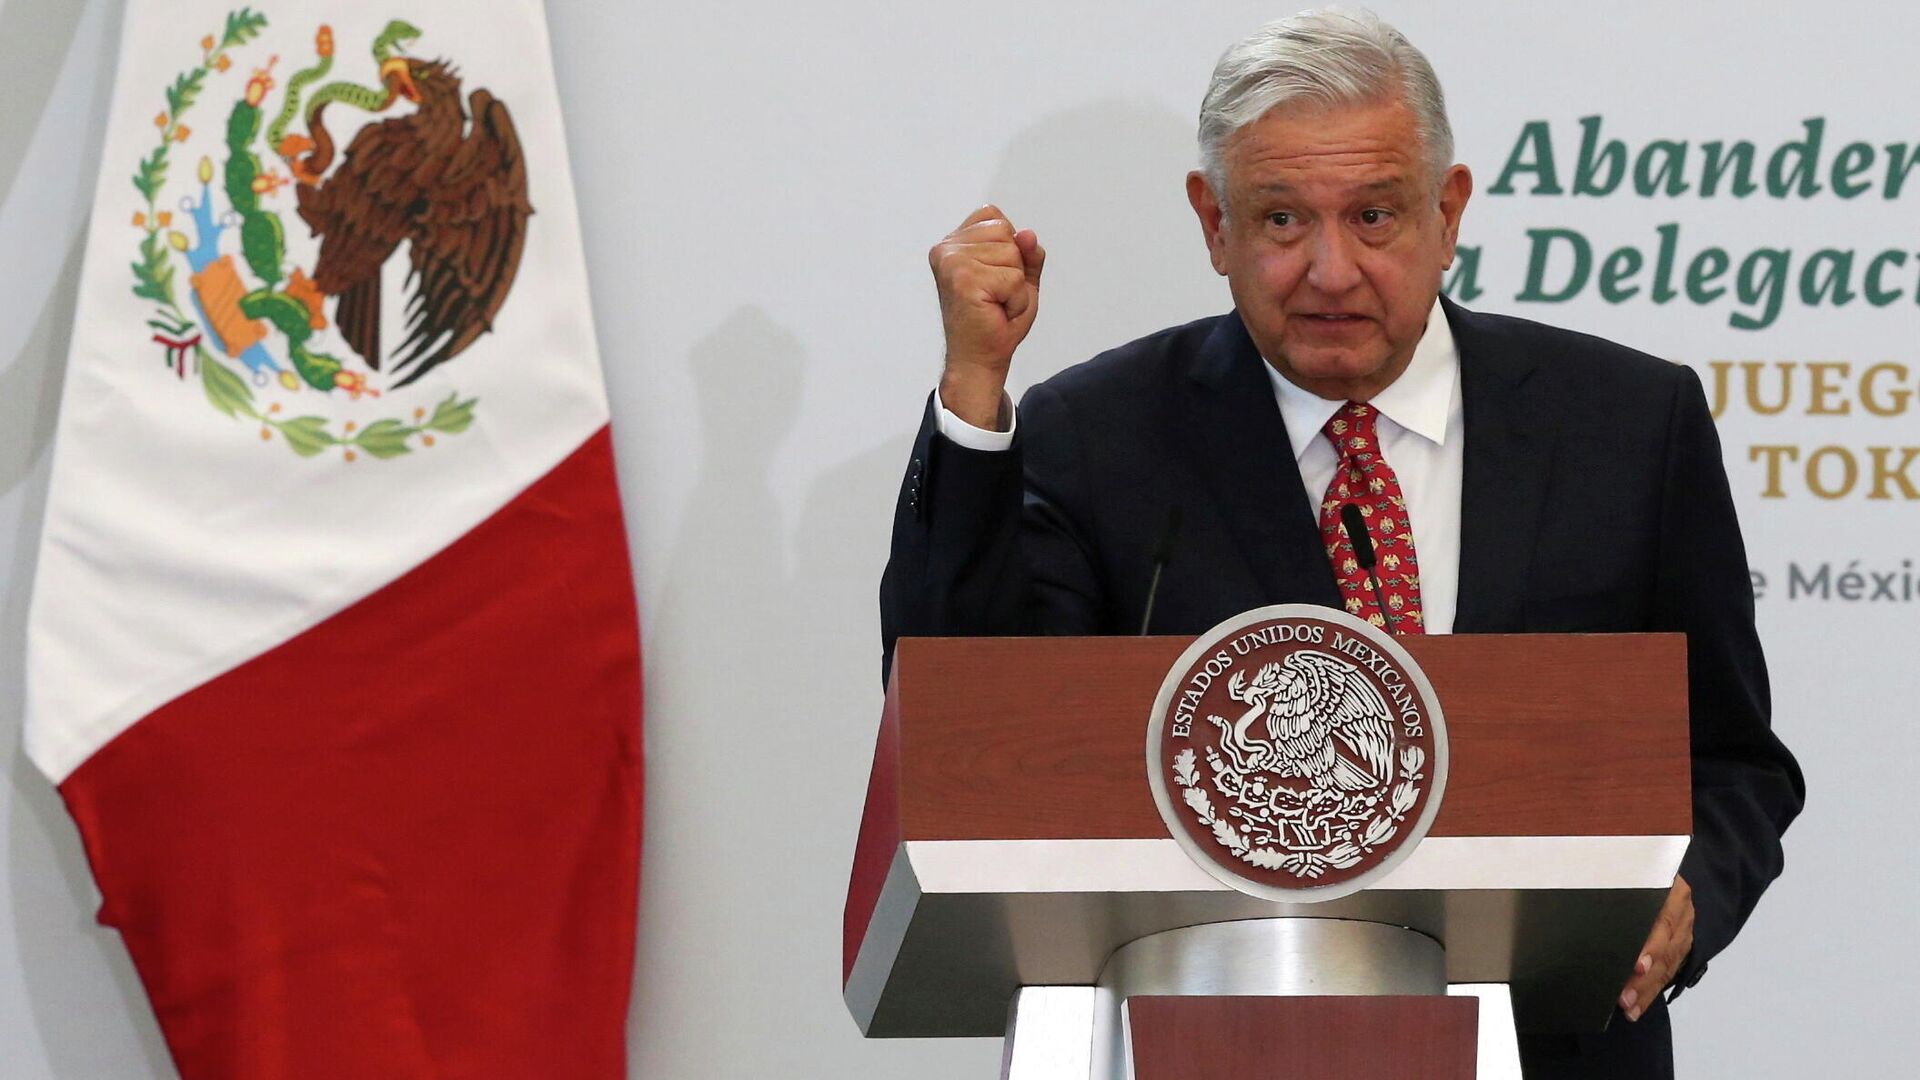 El presidente de México, Andrés Manuel López Obrador, pronuncia un discurso durante una ceremonia previa a los Juegos Olímpicos de Tokio 2020, en la Ciudad de México, México, el 5 de julio de 2021 - Sputnik Mundo, 1920, 10.08.2021